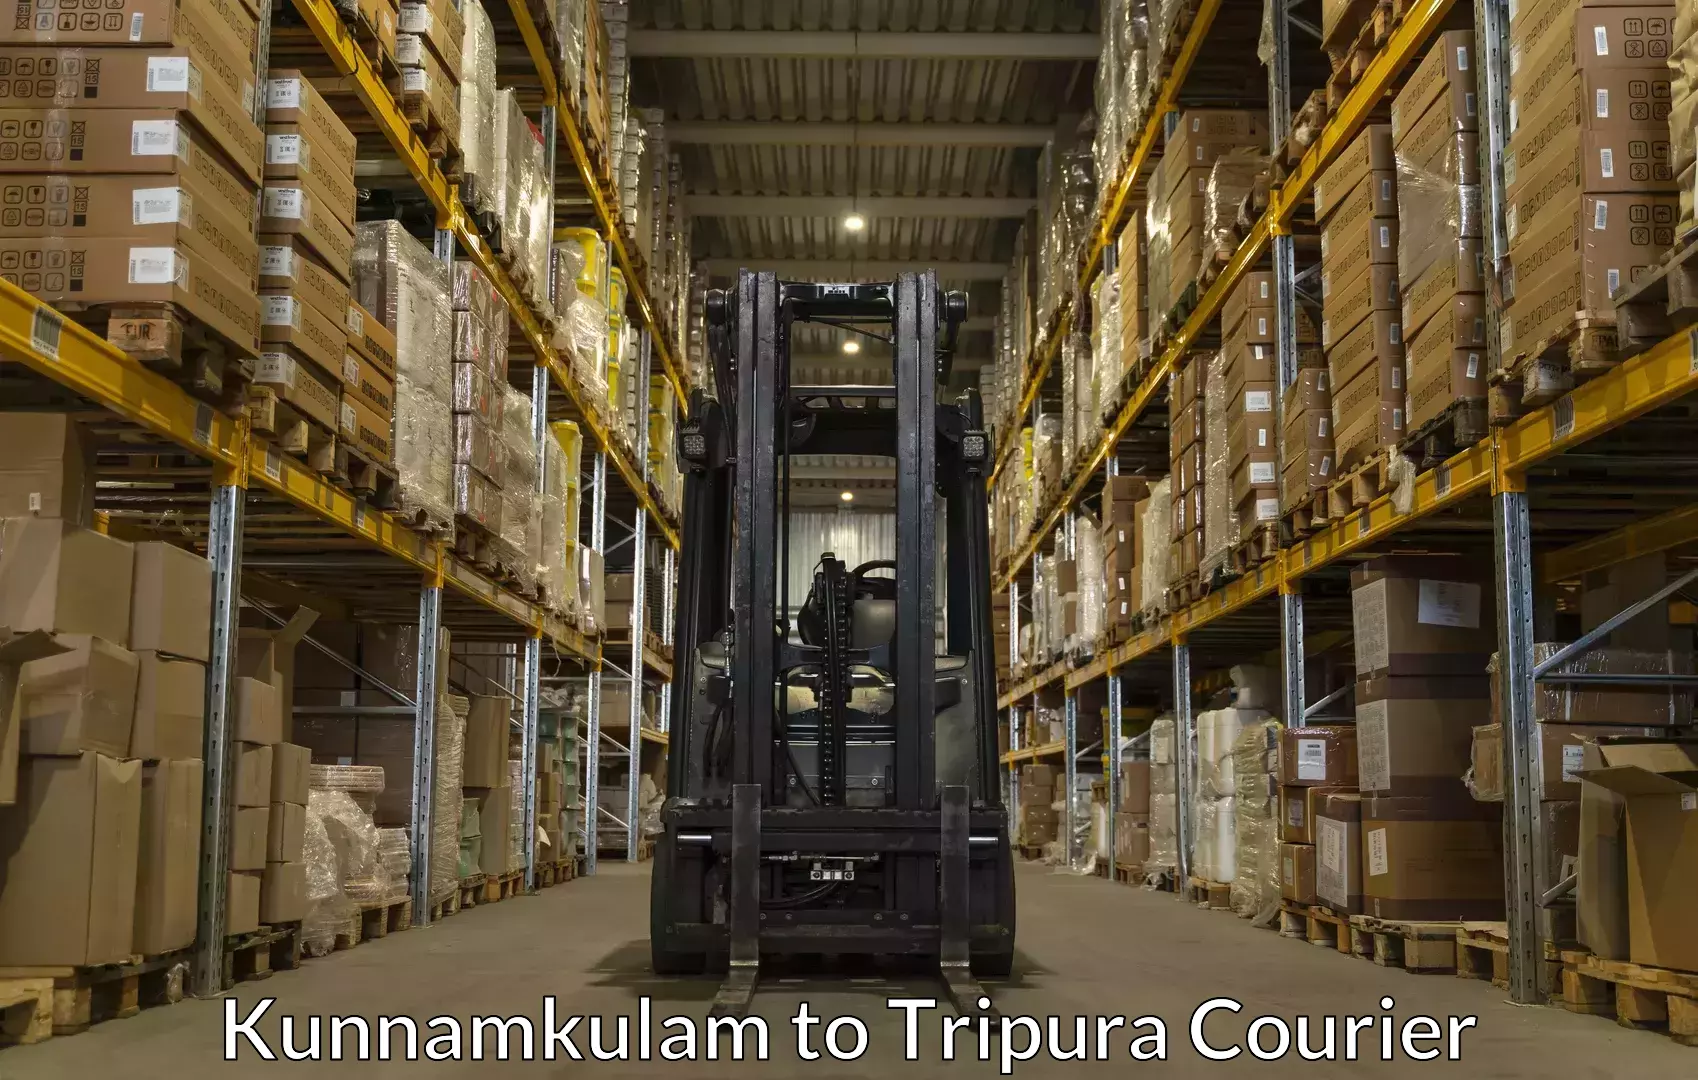 Baggage shipping experts Kunnamkulam to Dharmanagar